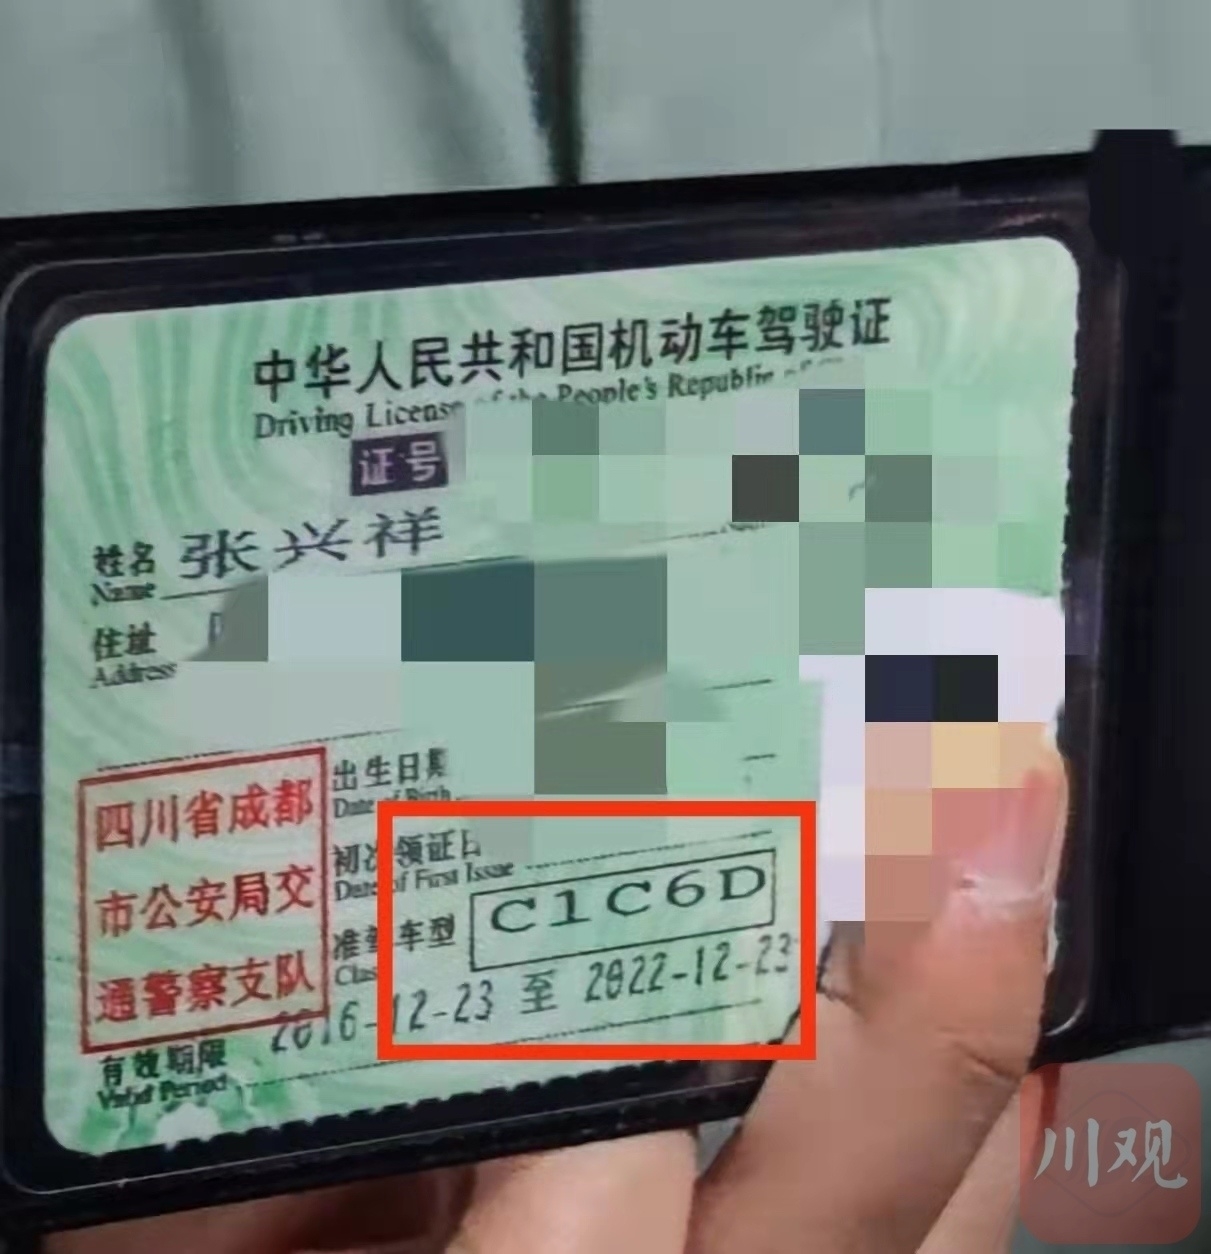 如何使用手机制作驾照证件照片？一文读懂。 - 哔哩哔哩